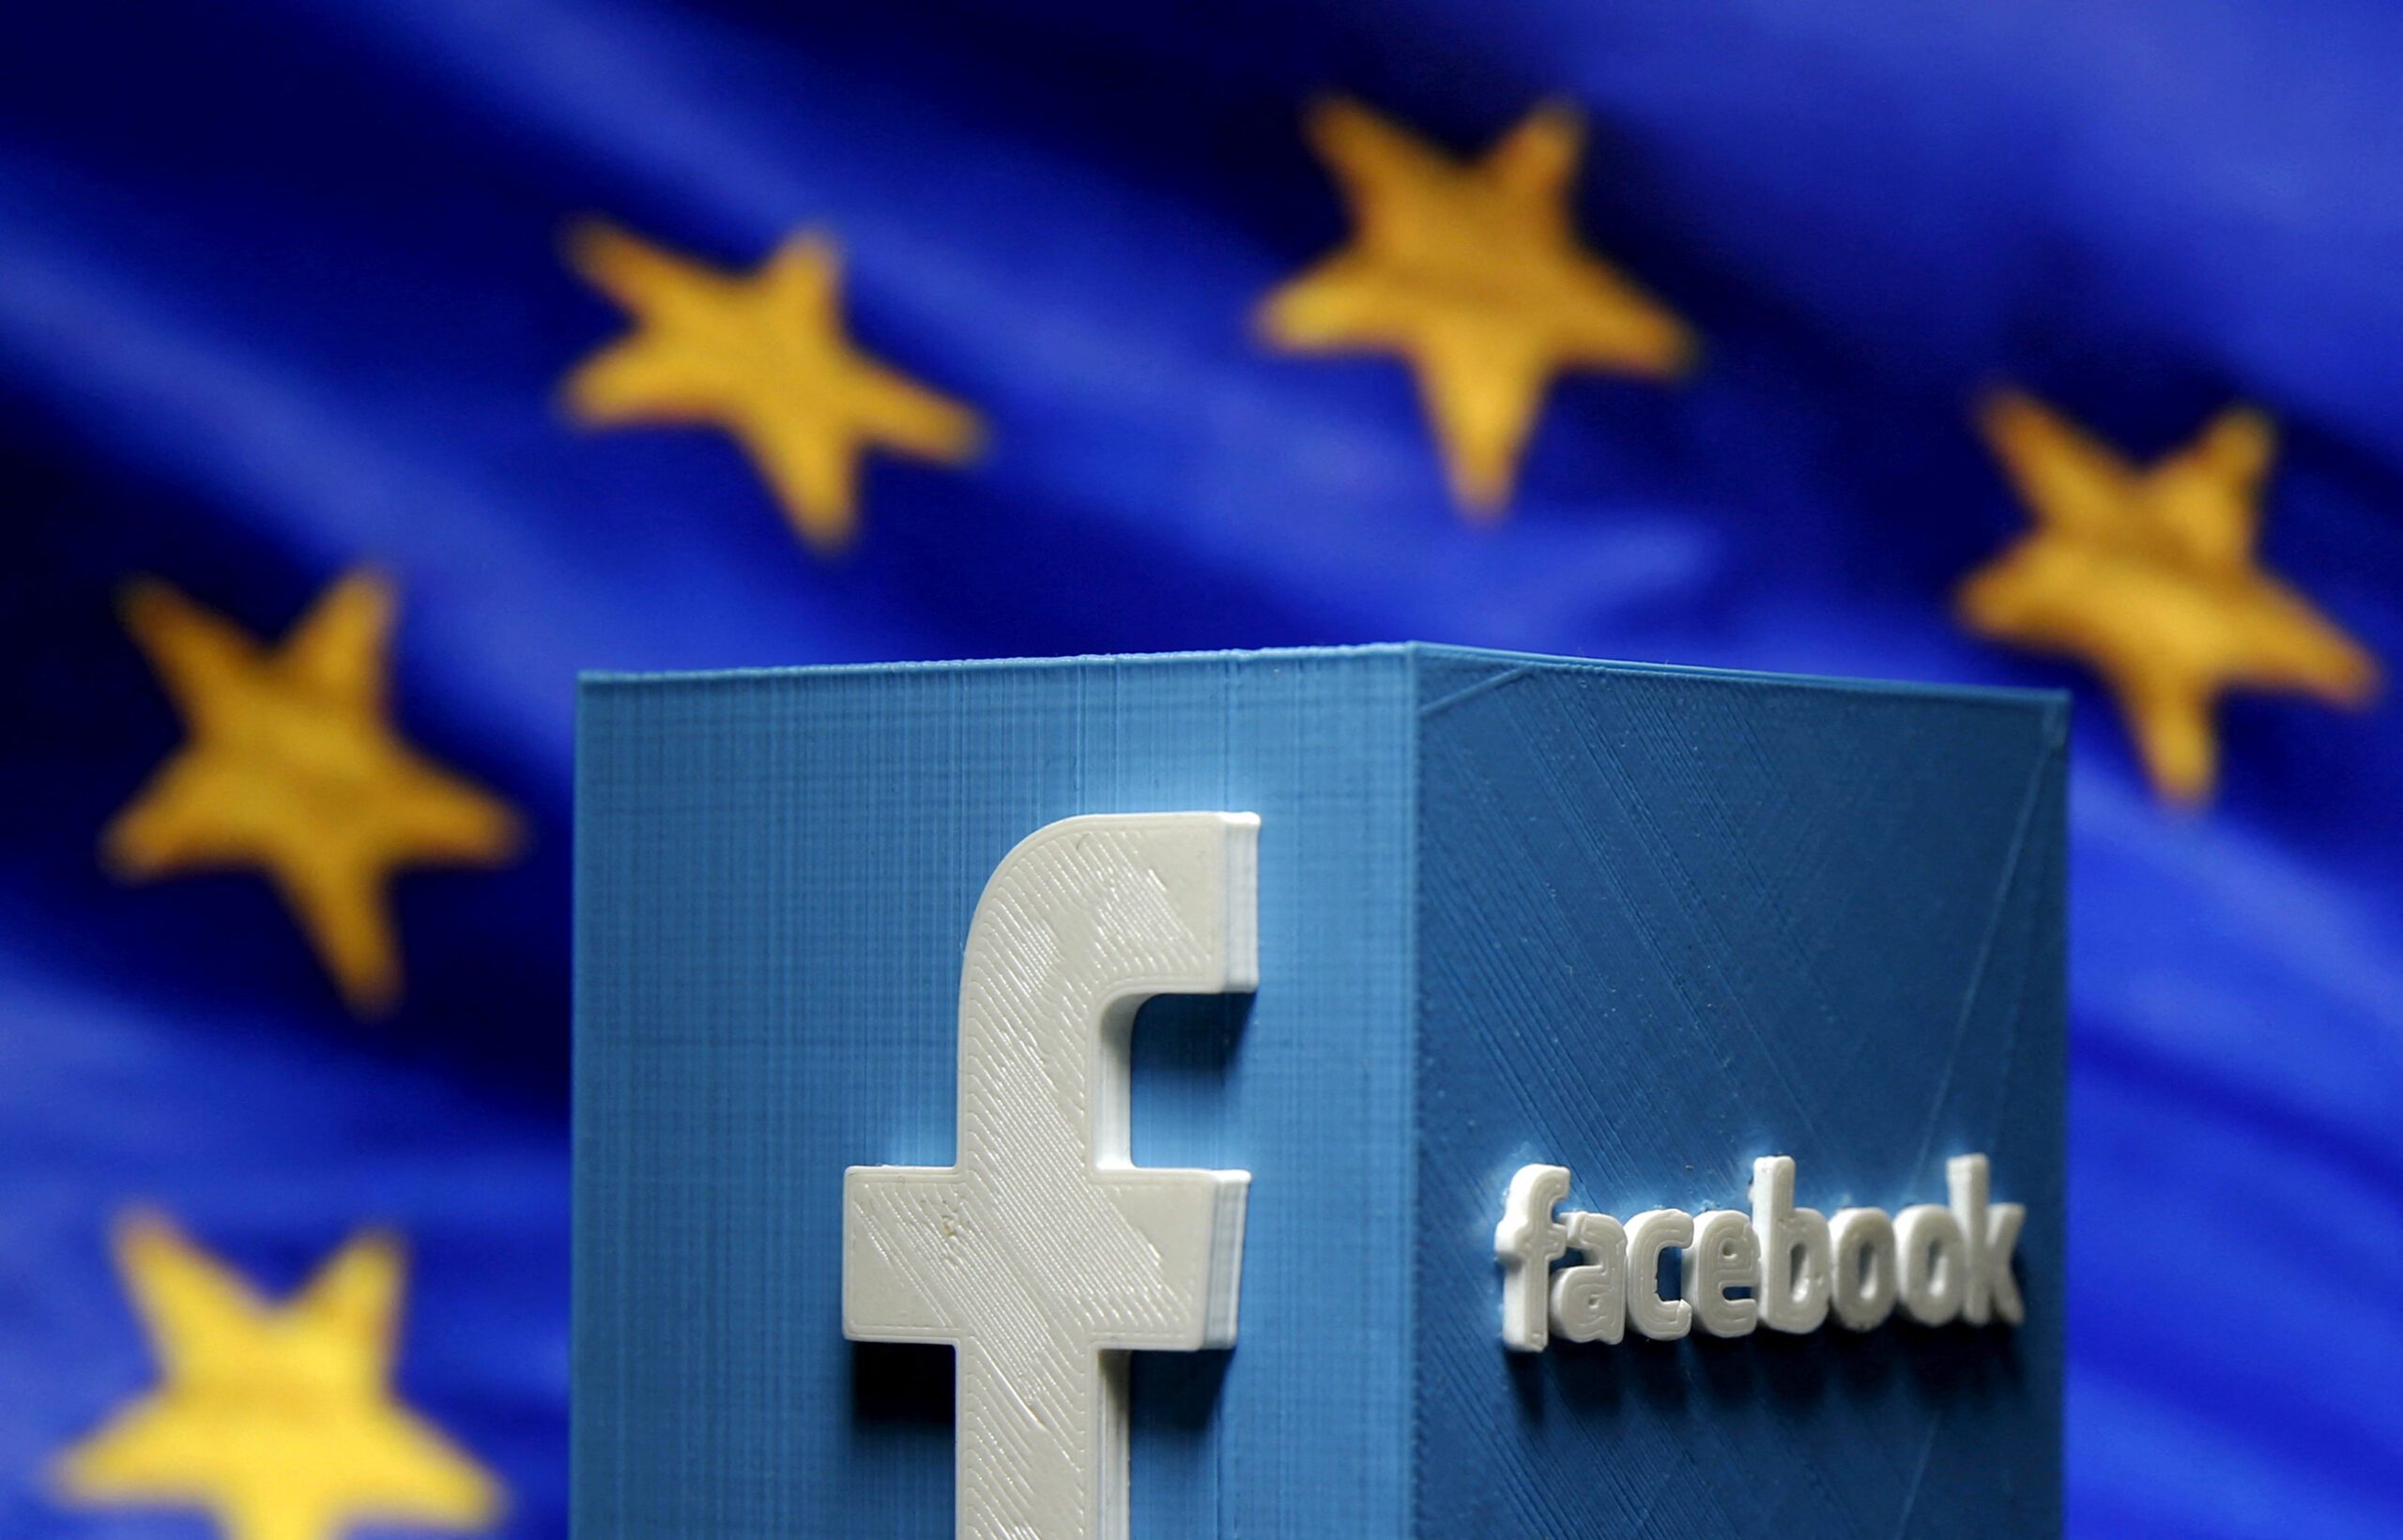 Facebook owner Meta faces EU ban on targeted advertising